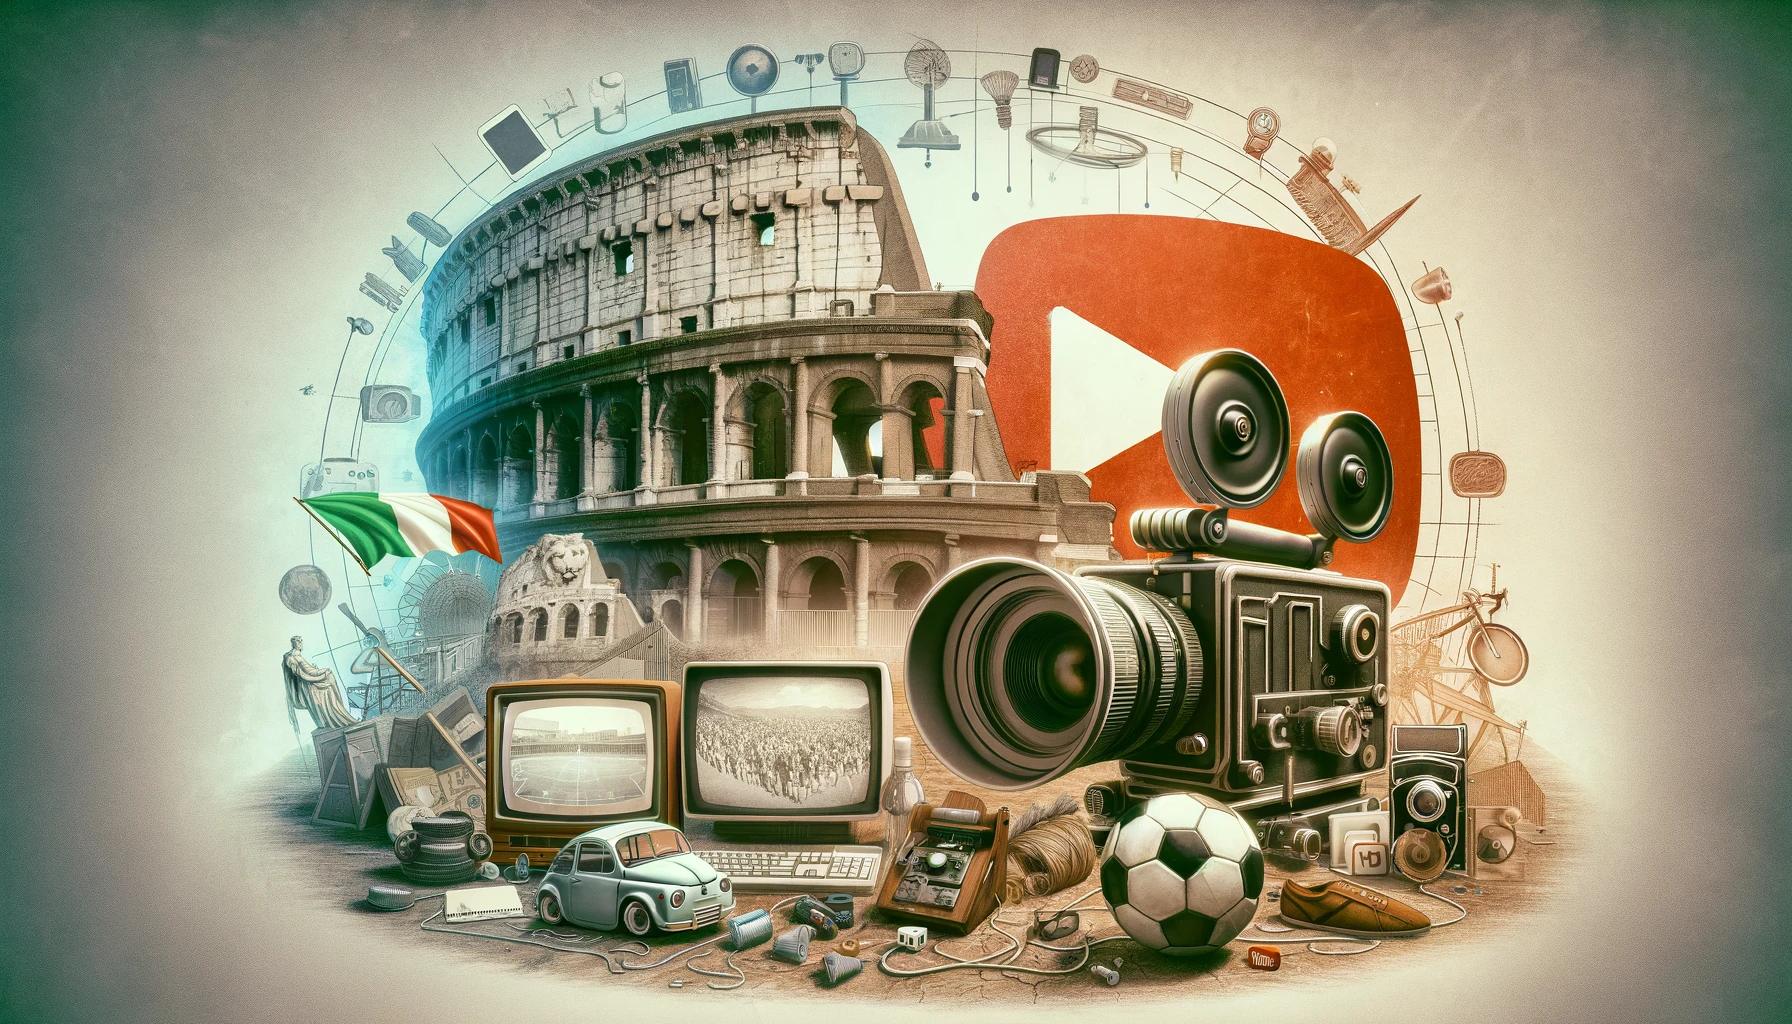 Collage che rappresenta l'evoluzione culturale e digitale italiana con il Colosseo, una videocamera vintage, un computer classico, iconografia di YouTube e un pallone da calcio, simboli dell'ascesa del primo YouTuber italiano